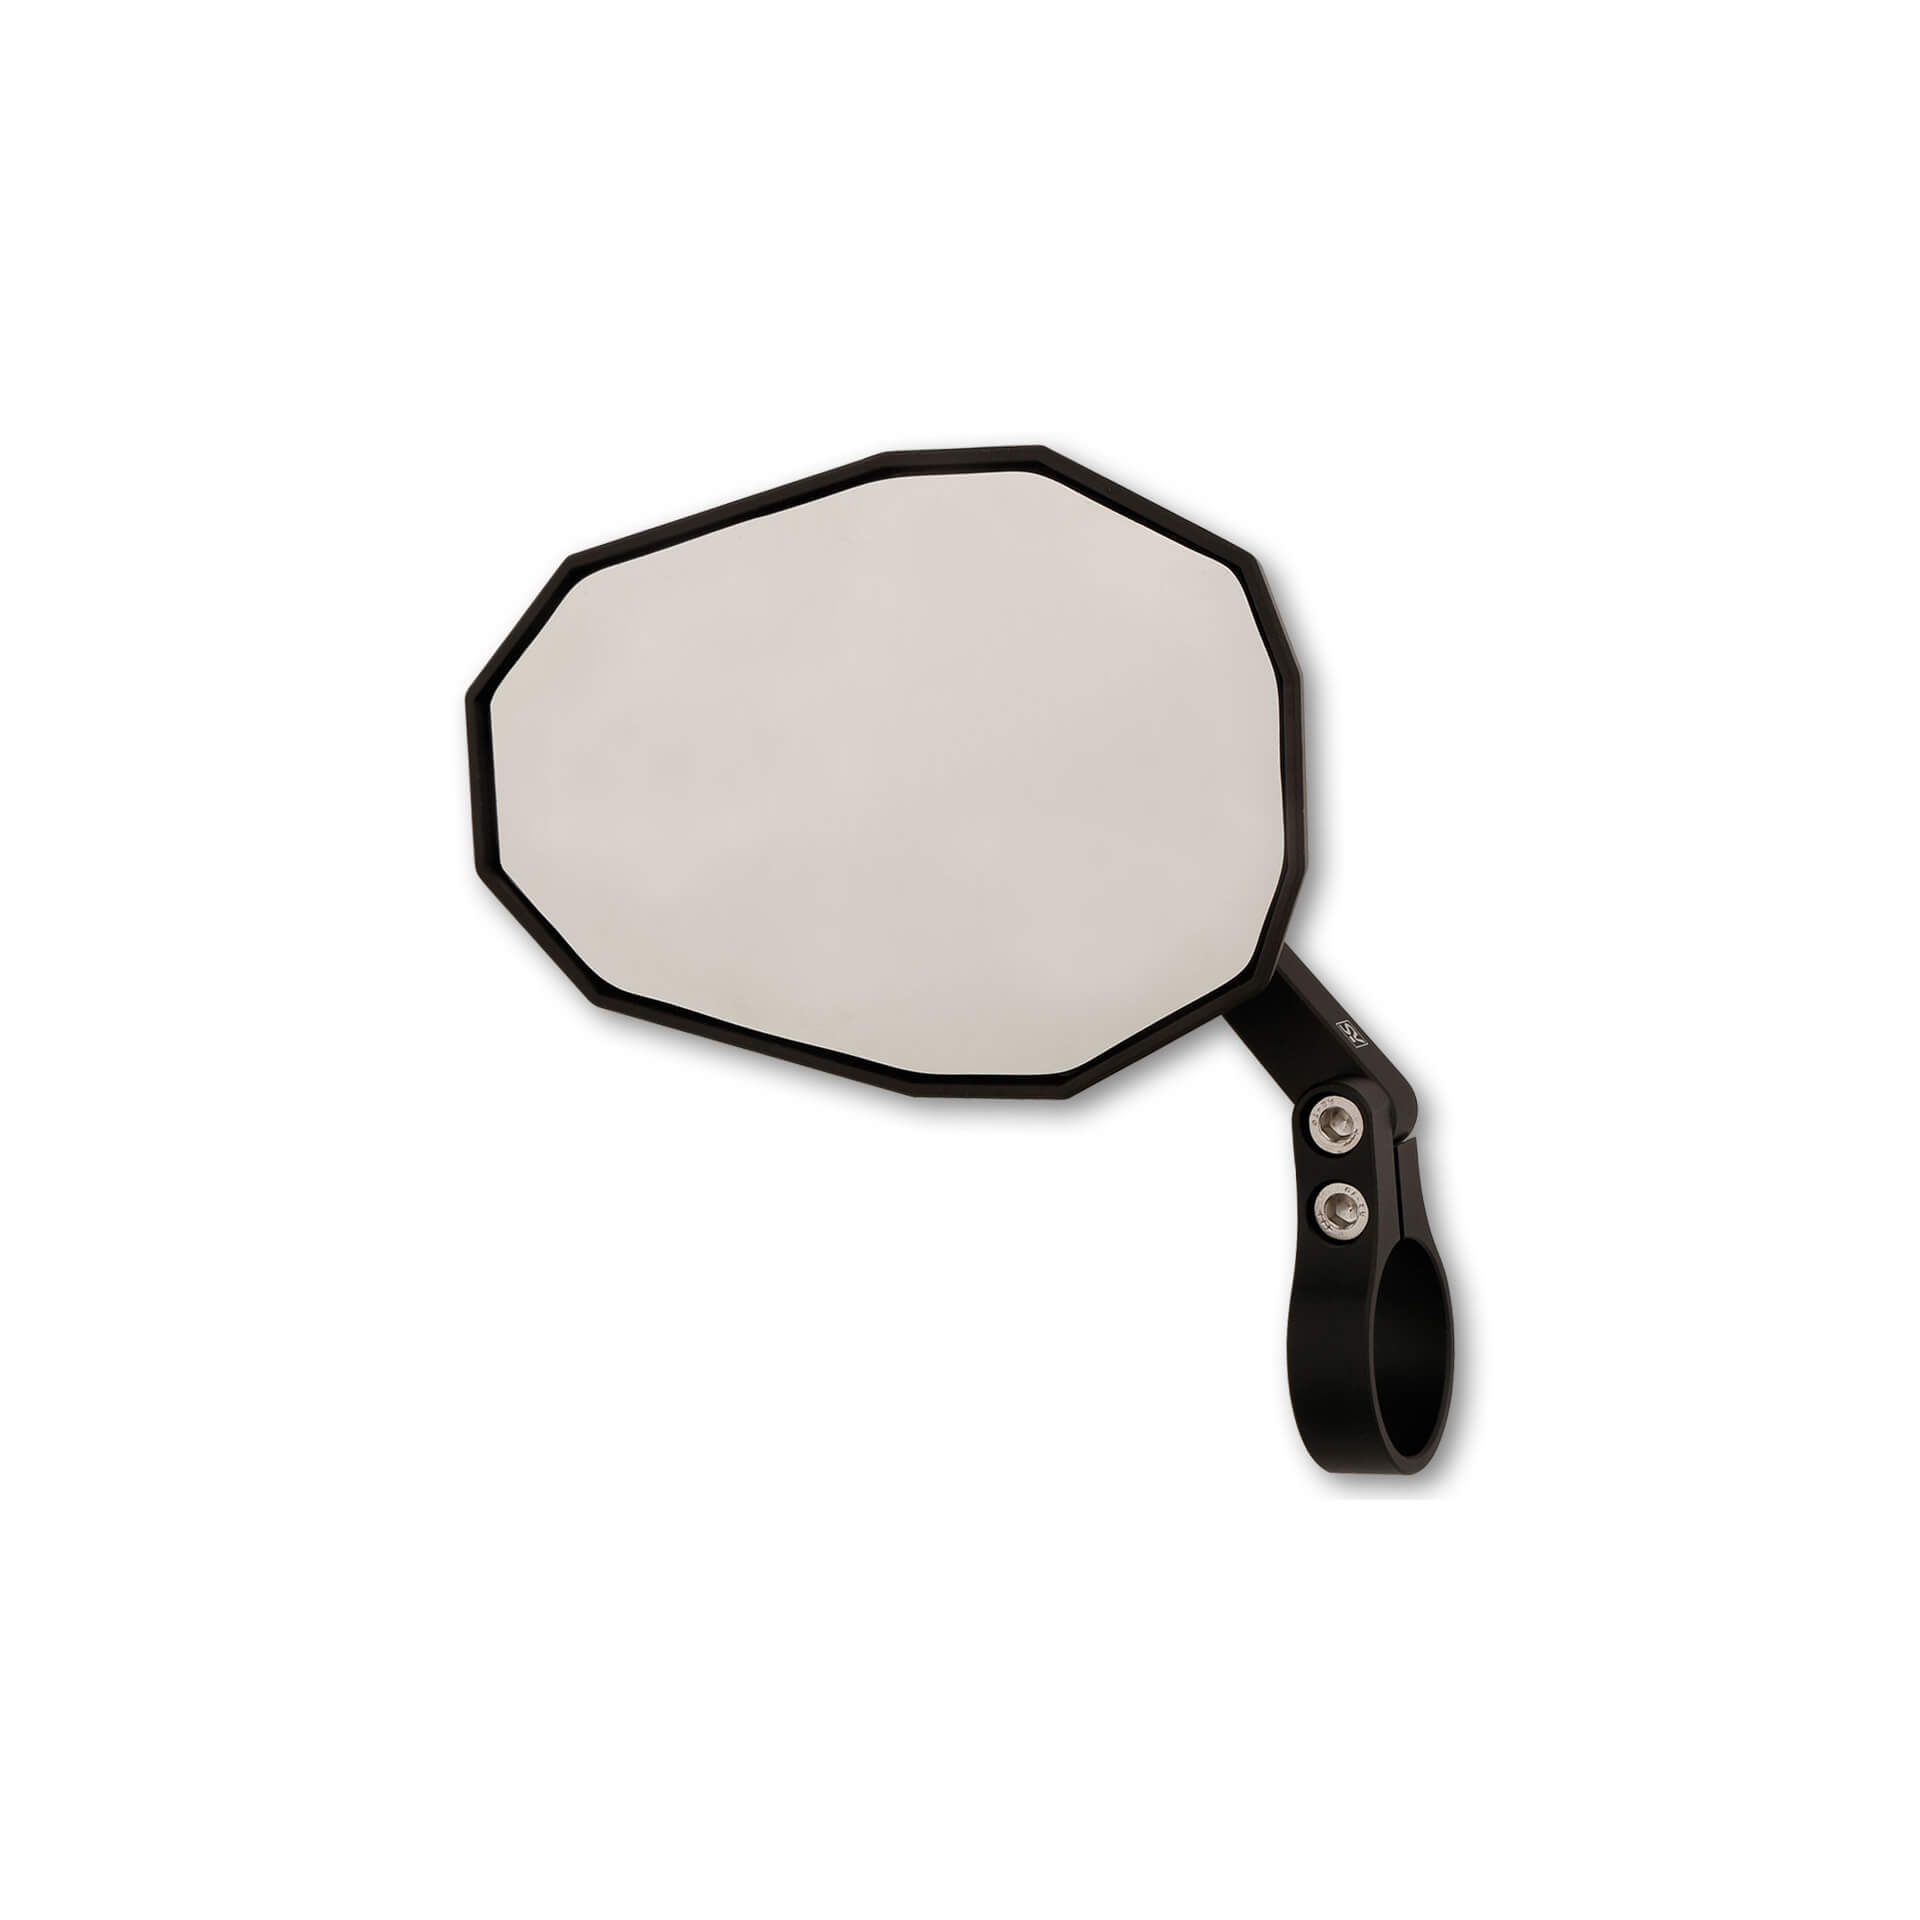 Specchio bar-end STRAIGHT per manubri 22mm 25mm alluminio nero Omologato